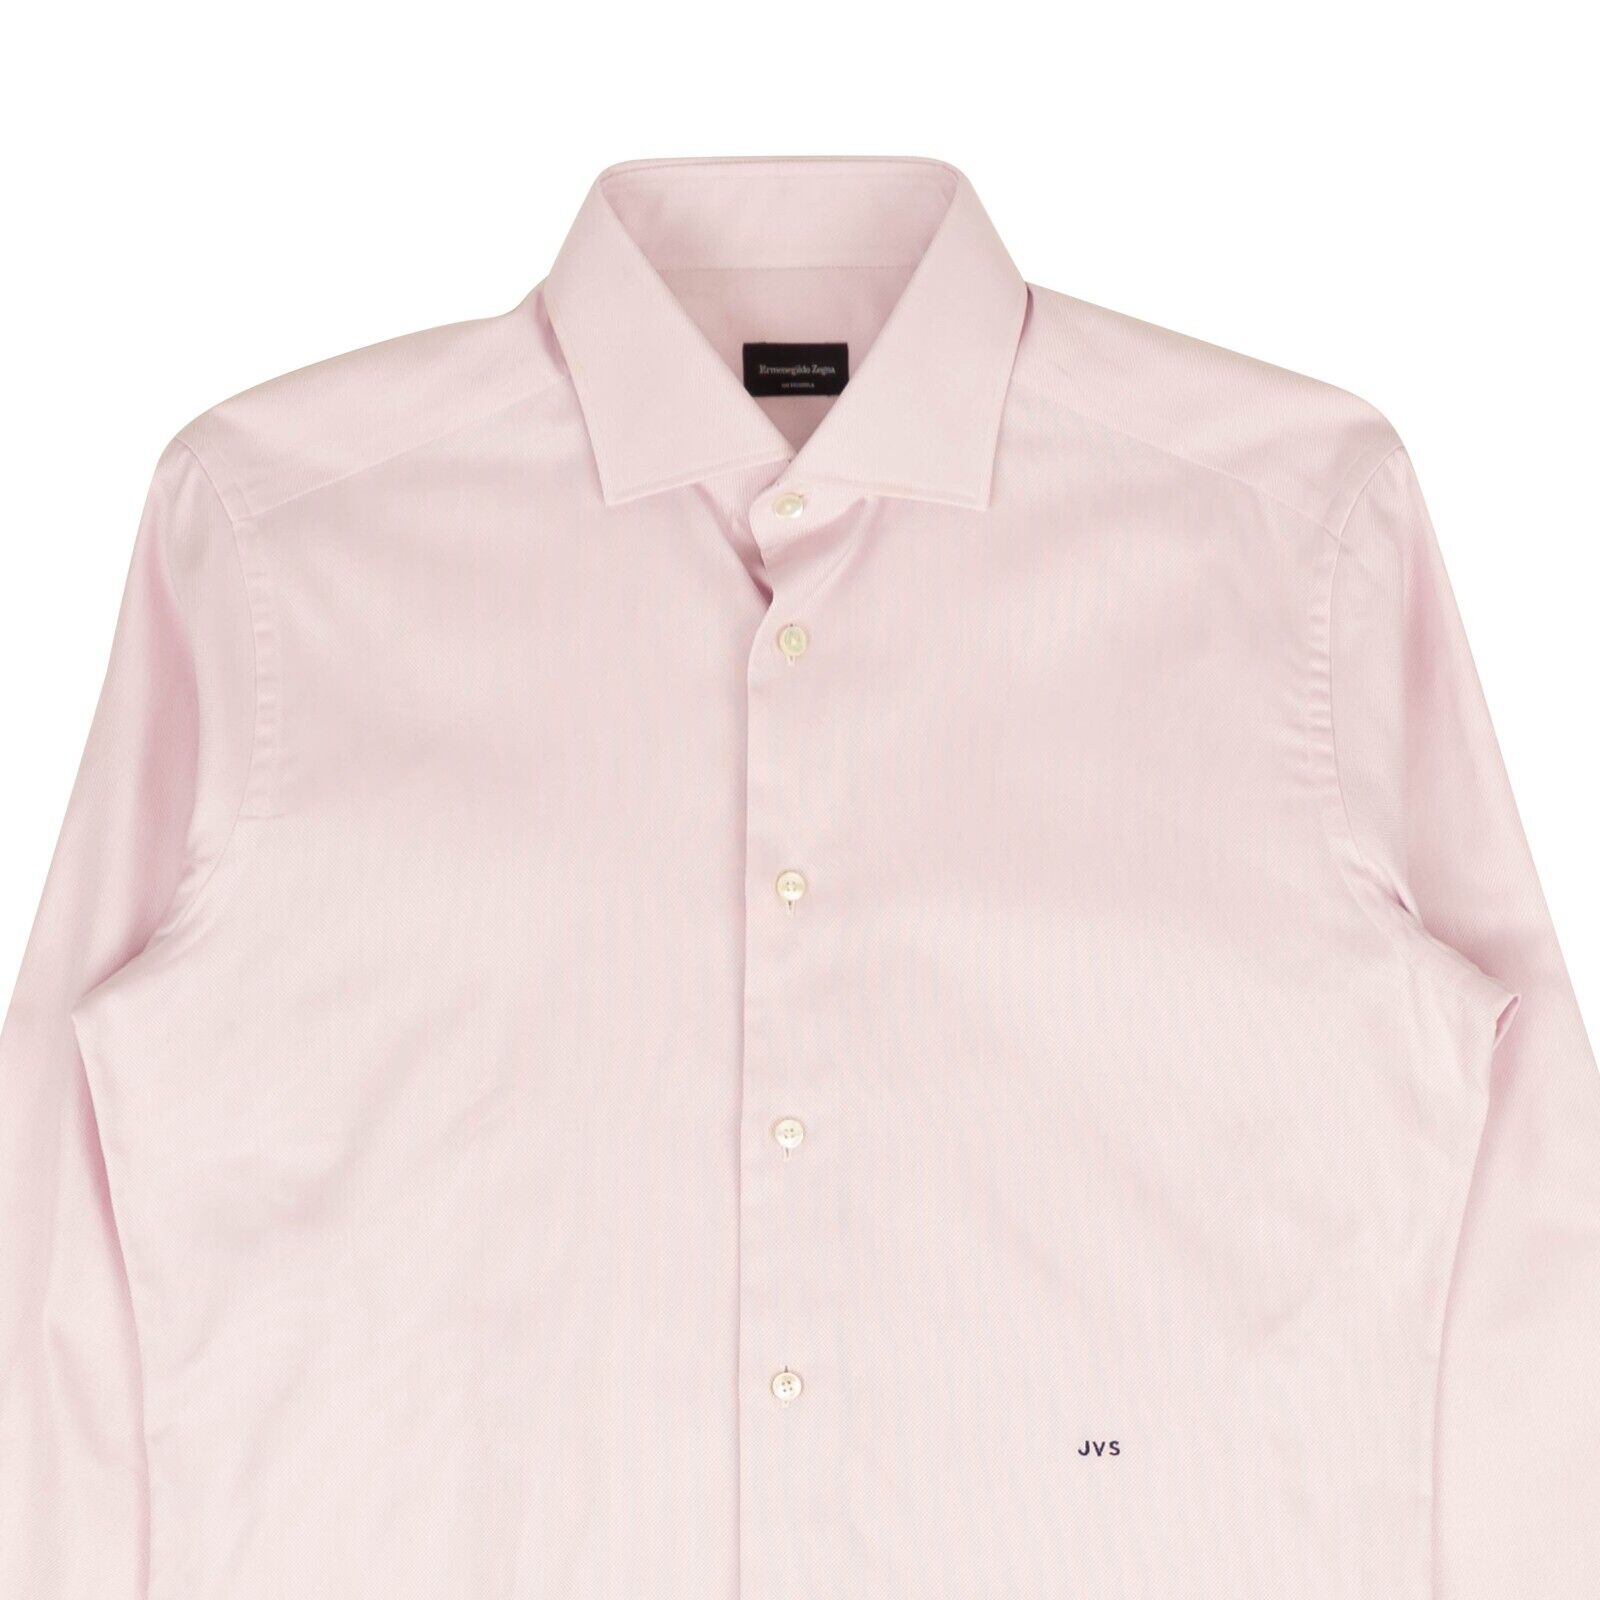 Ermenegildo Zegna Woven Dress Shirt - Pink